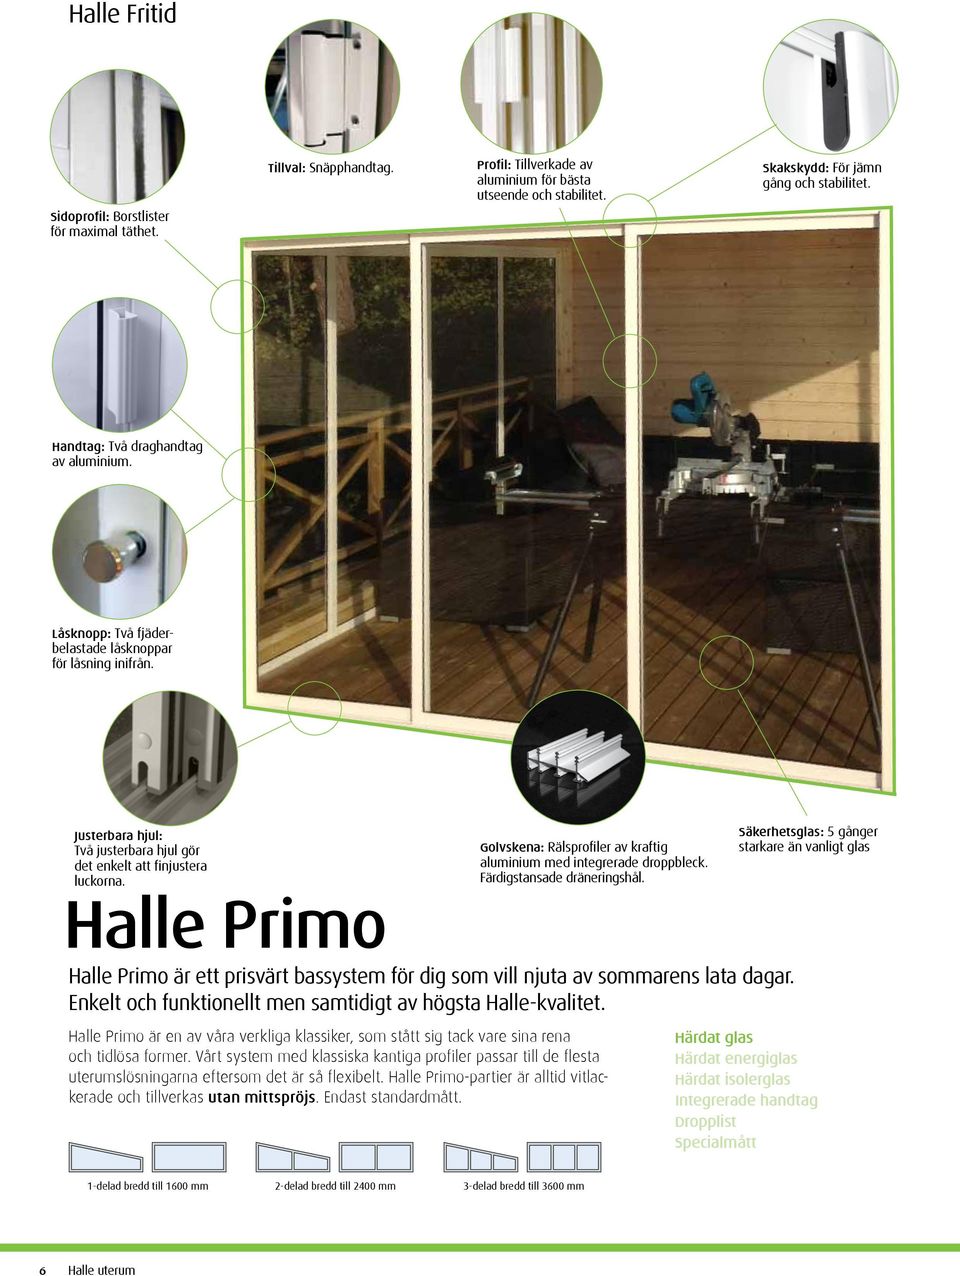 Halle Primo Golvskena: Rälsprofiler av kraftig aluminium med integrerade droppbleck. Färdigstansade dräneringshål.